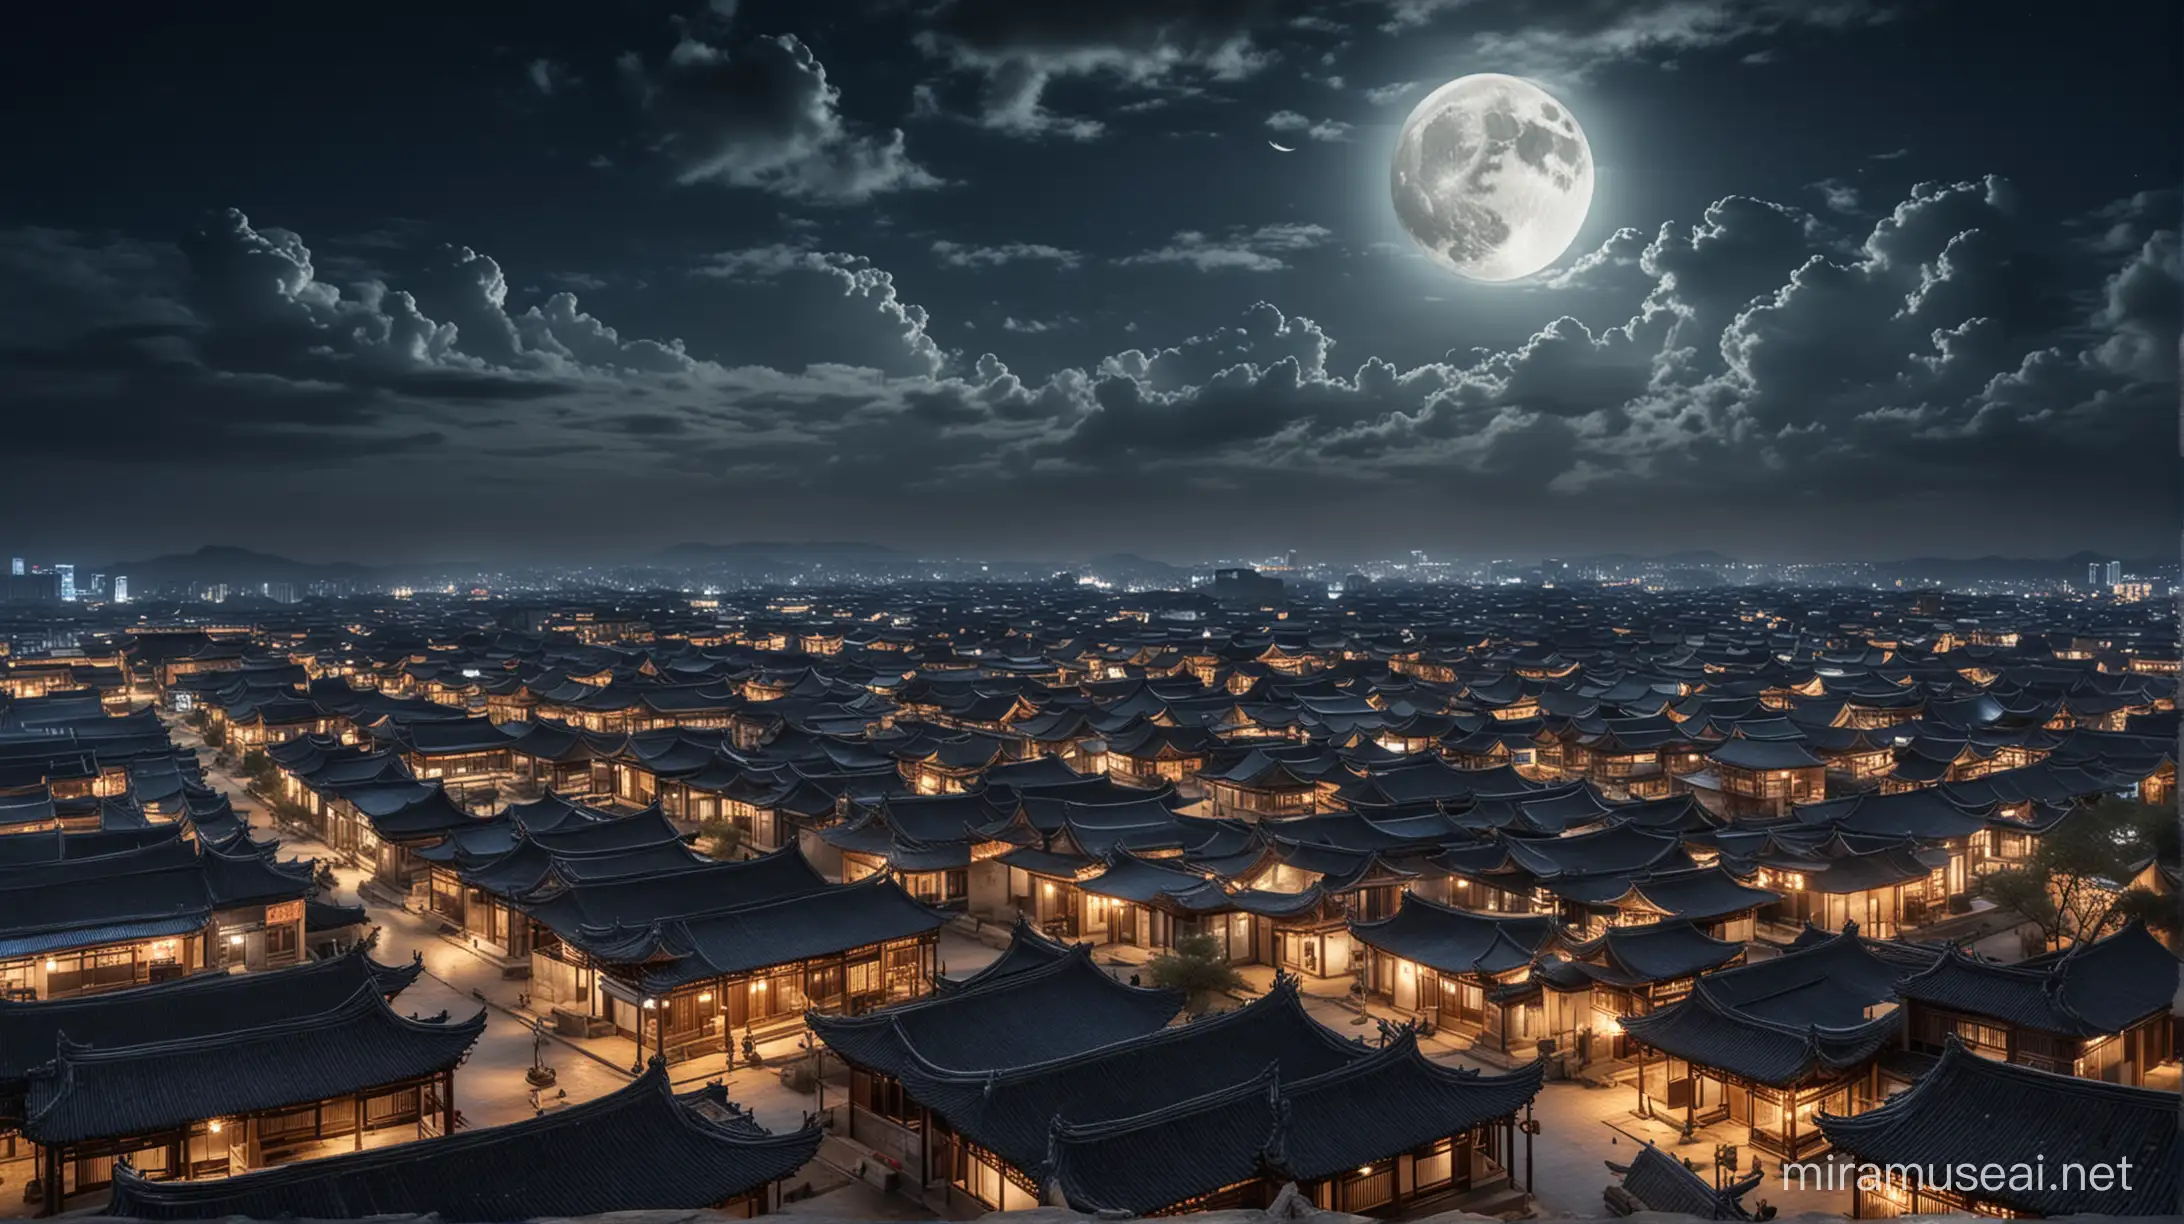 在古代中国的汉朝，长安城的一个角落，中景。有10几个民宅，其中有几座民宅是两层的。夜晚，天上挂着一个圆圆的月亮，云朵飘在天上。月光照亮了街道